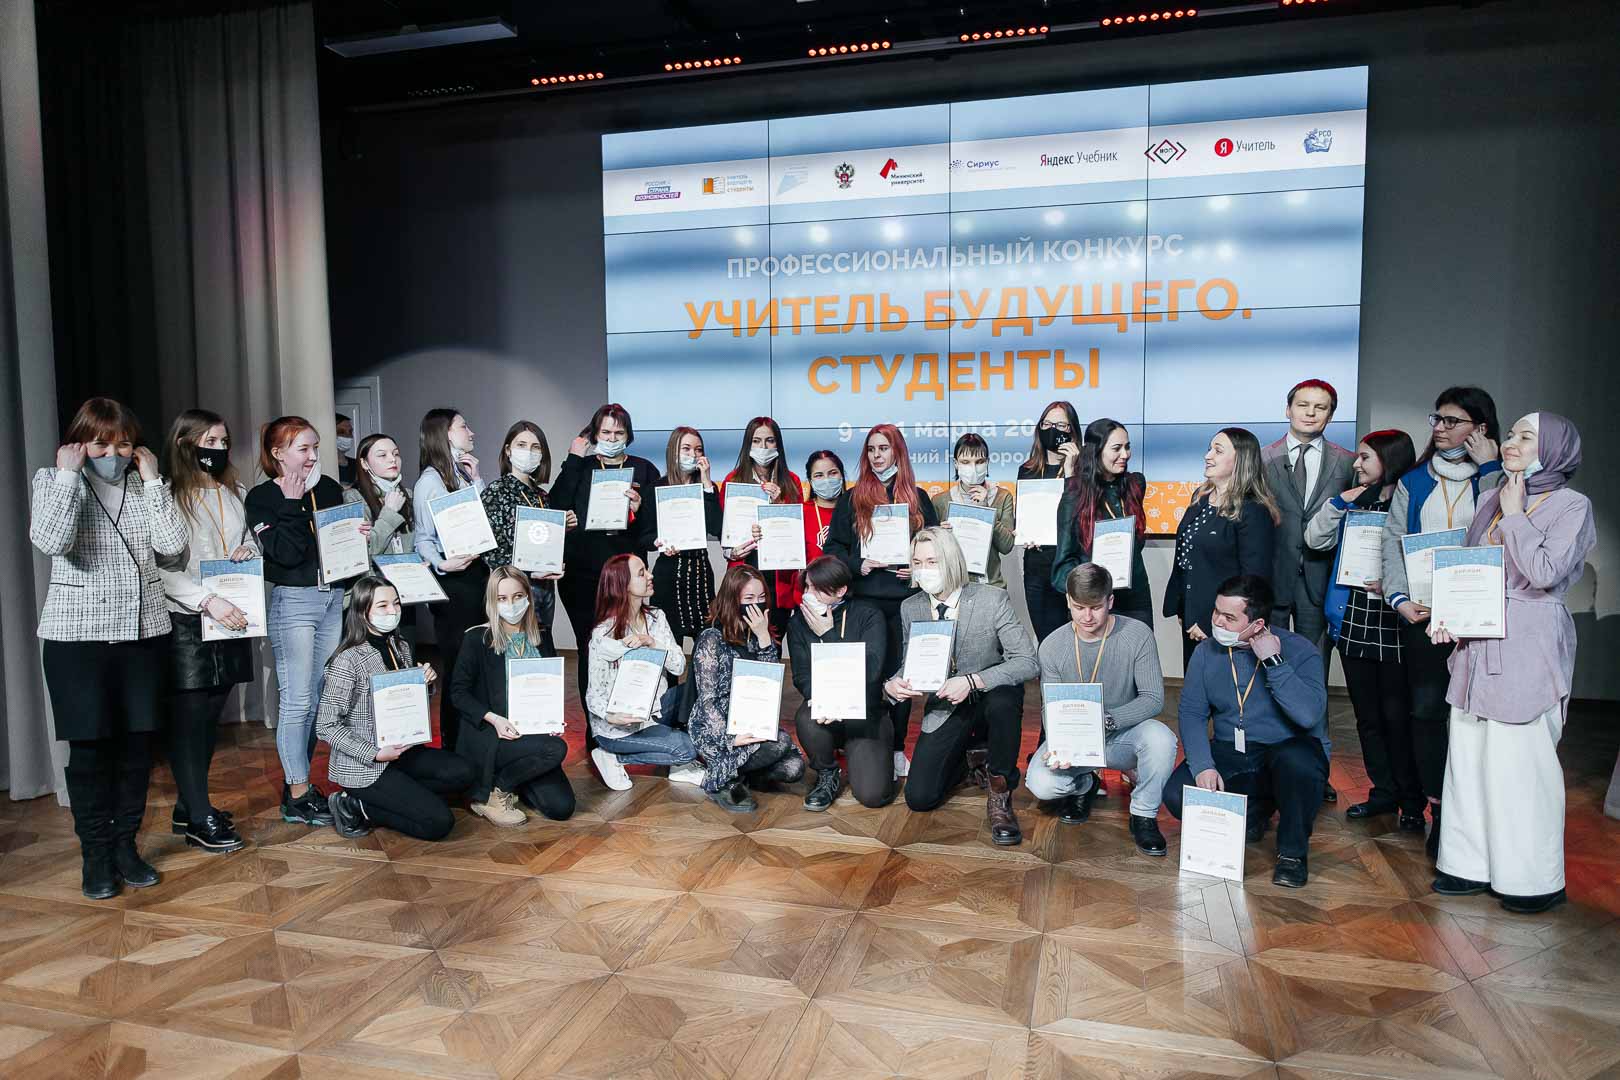 Студентка Мининского университета стала финалисткой конкурса «Учитель будущего. Студенты»